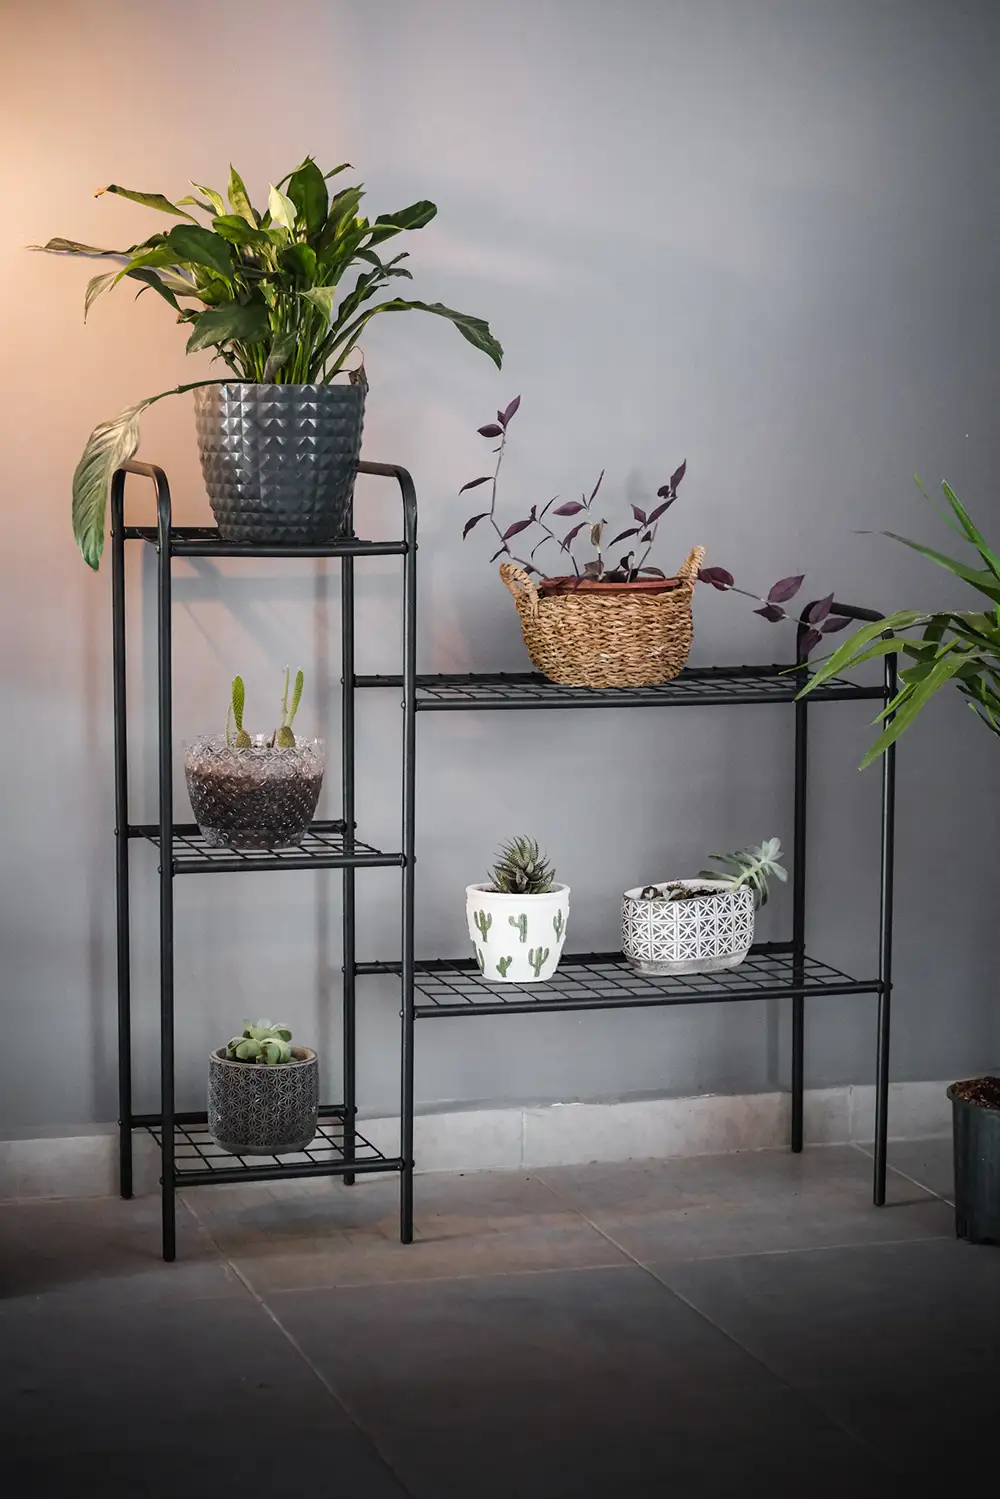 Oval Designed Metal Flower Pot Stands (5 Shelves)